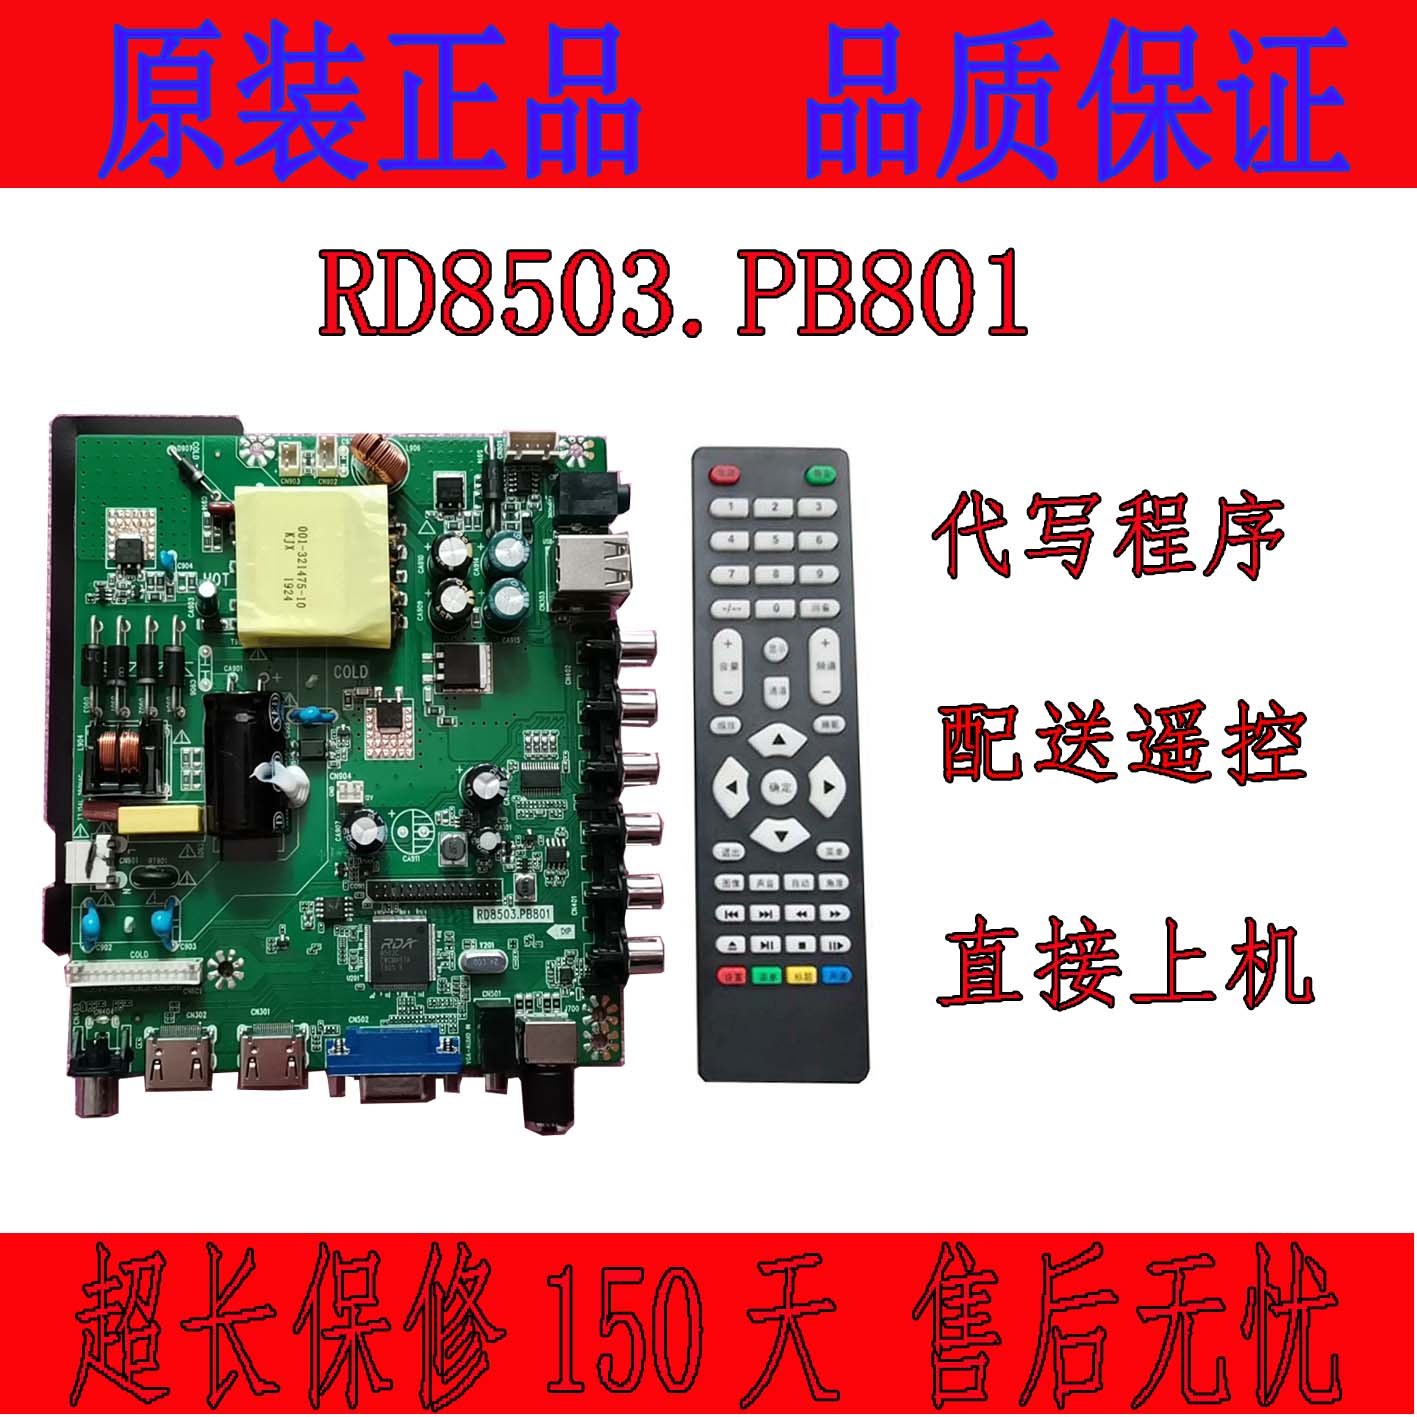 乐华一体主板RD8503.PB801、SKR.801、35W 45W